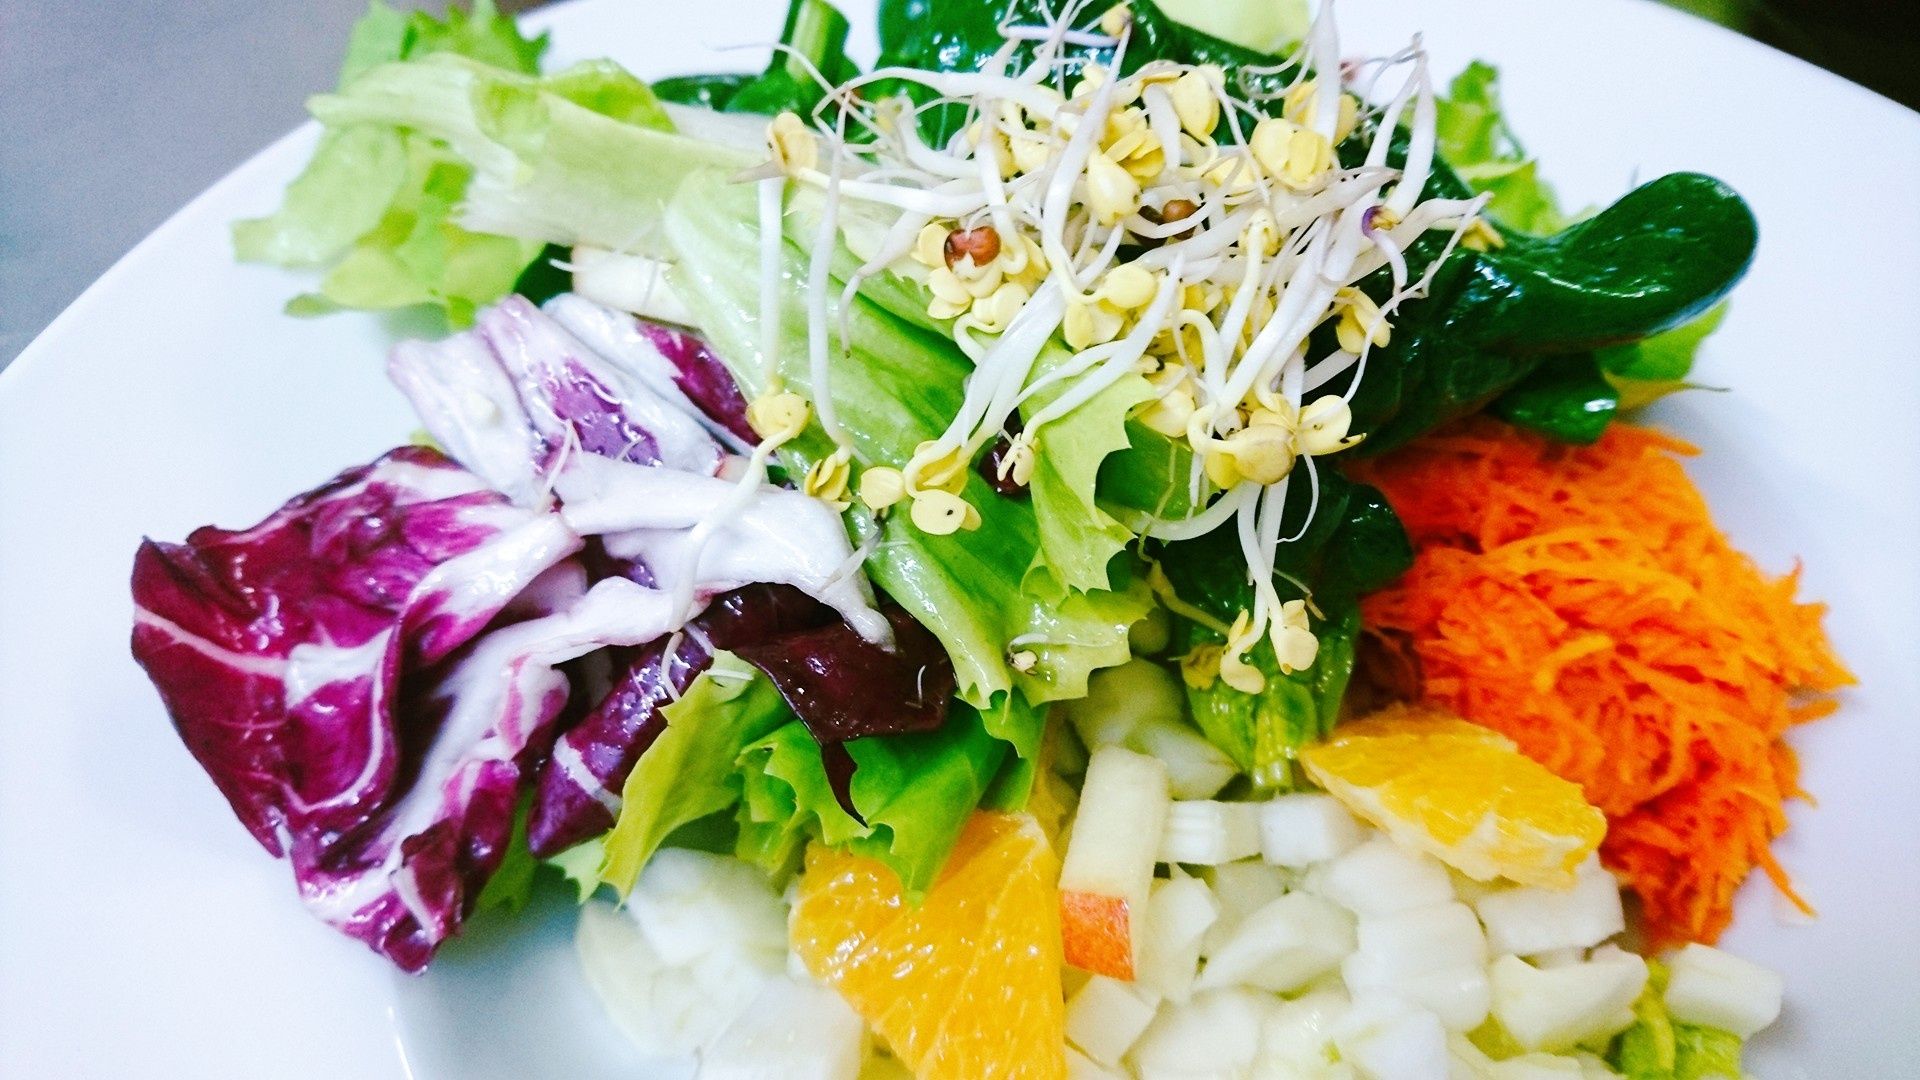 biohotel schratt salat basenfasten